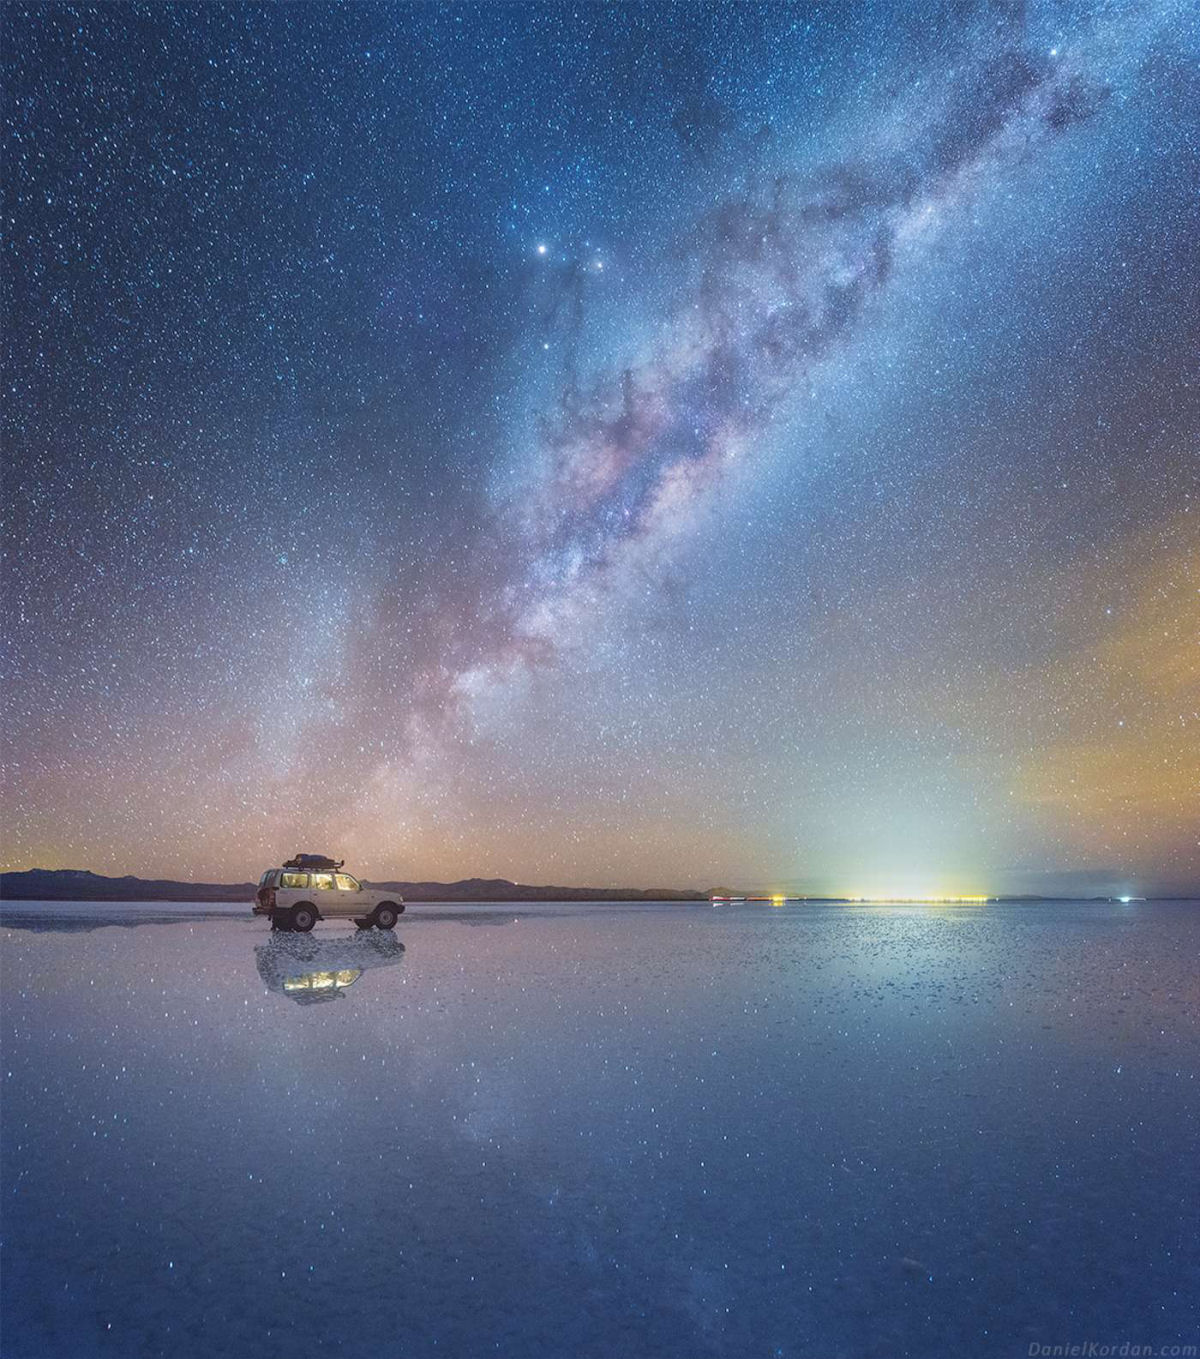 Fotógrafo russo captura deslumbrantes fotos da Via Láctea espelhada em planície de sal na Bolívia 02